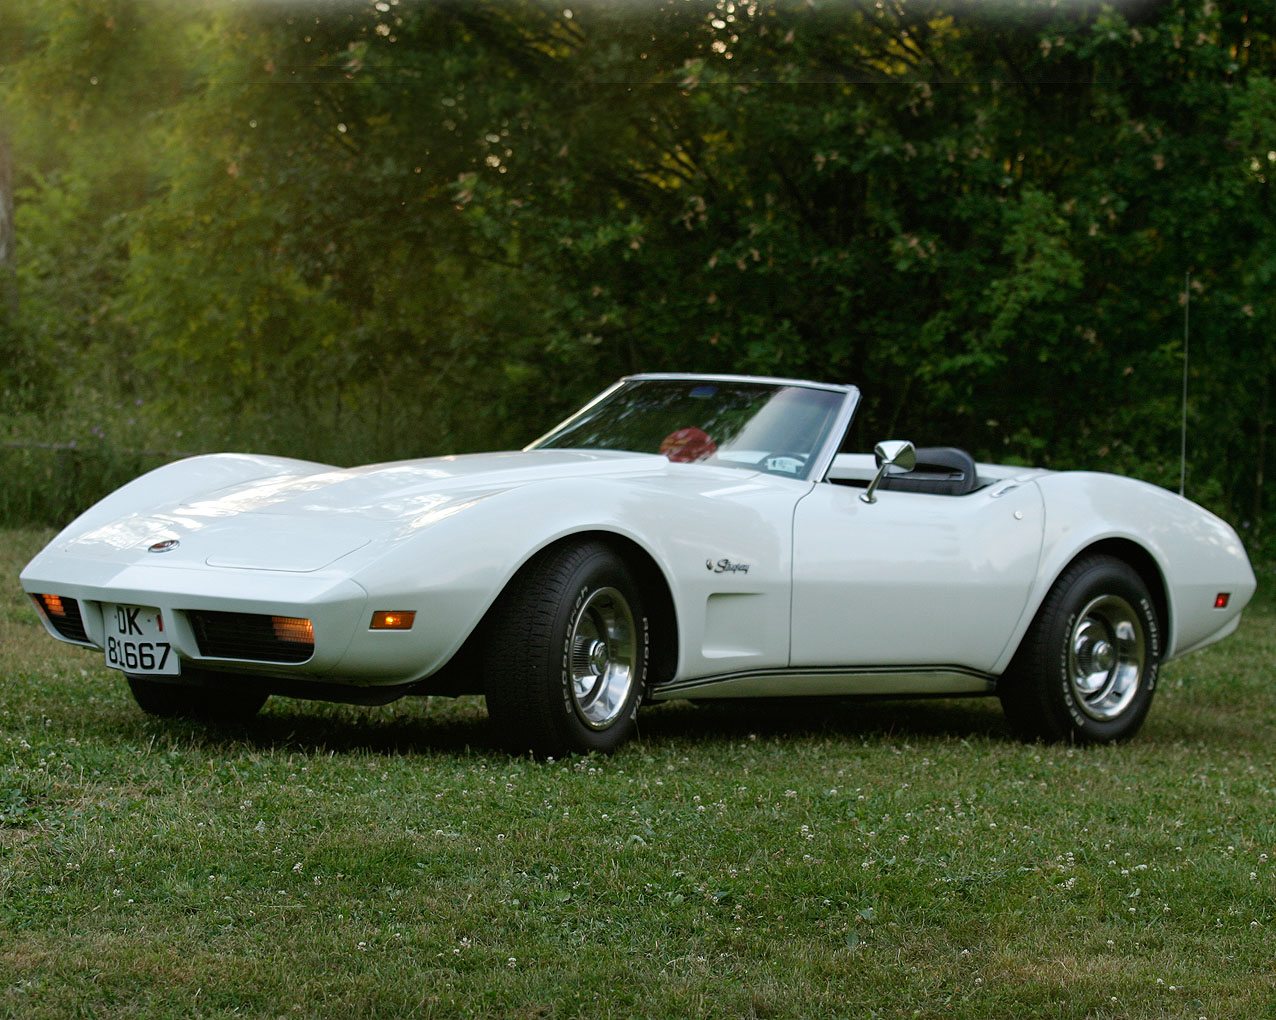 1974 Corvette | | CorvSport.com